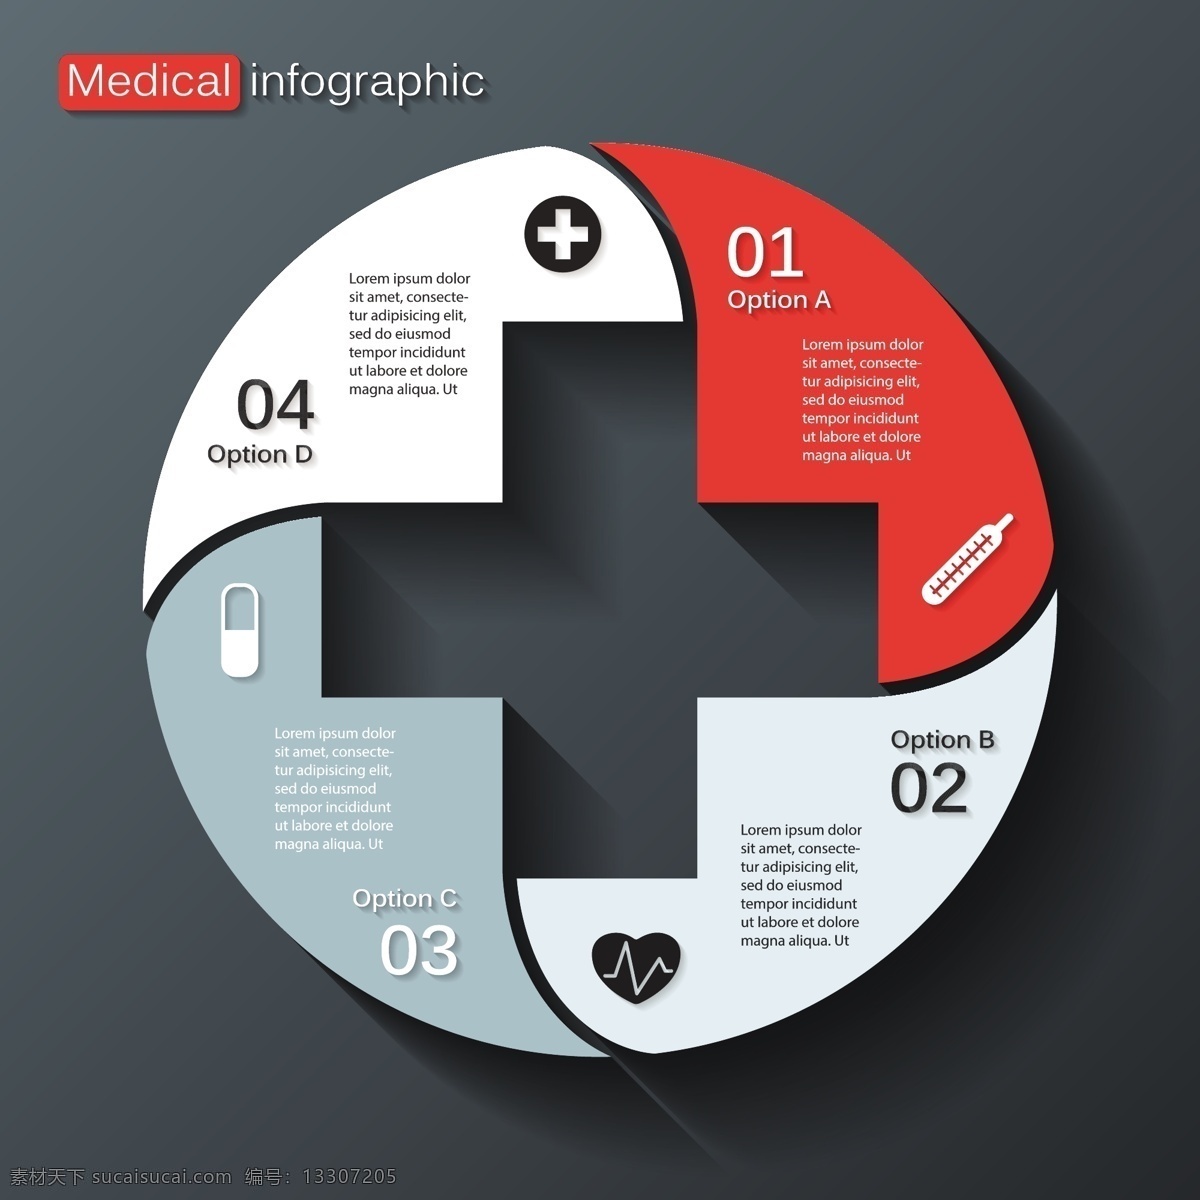 十字立体图表 十字 医学标志 医疗图表 图表 图表设计 生活百科 矢量素材 白色